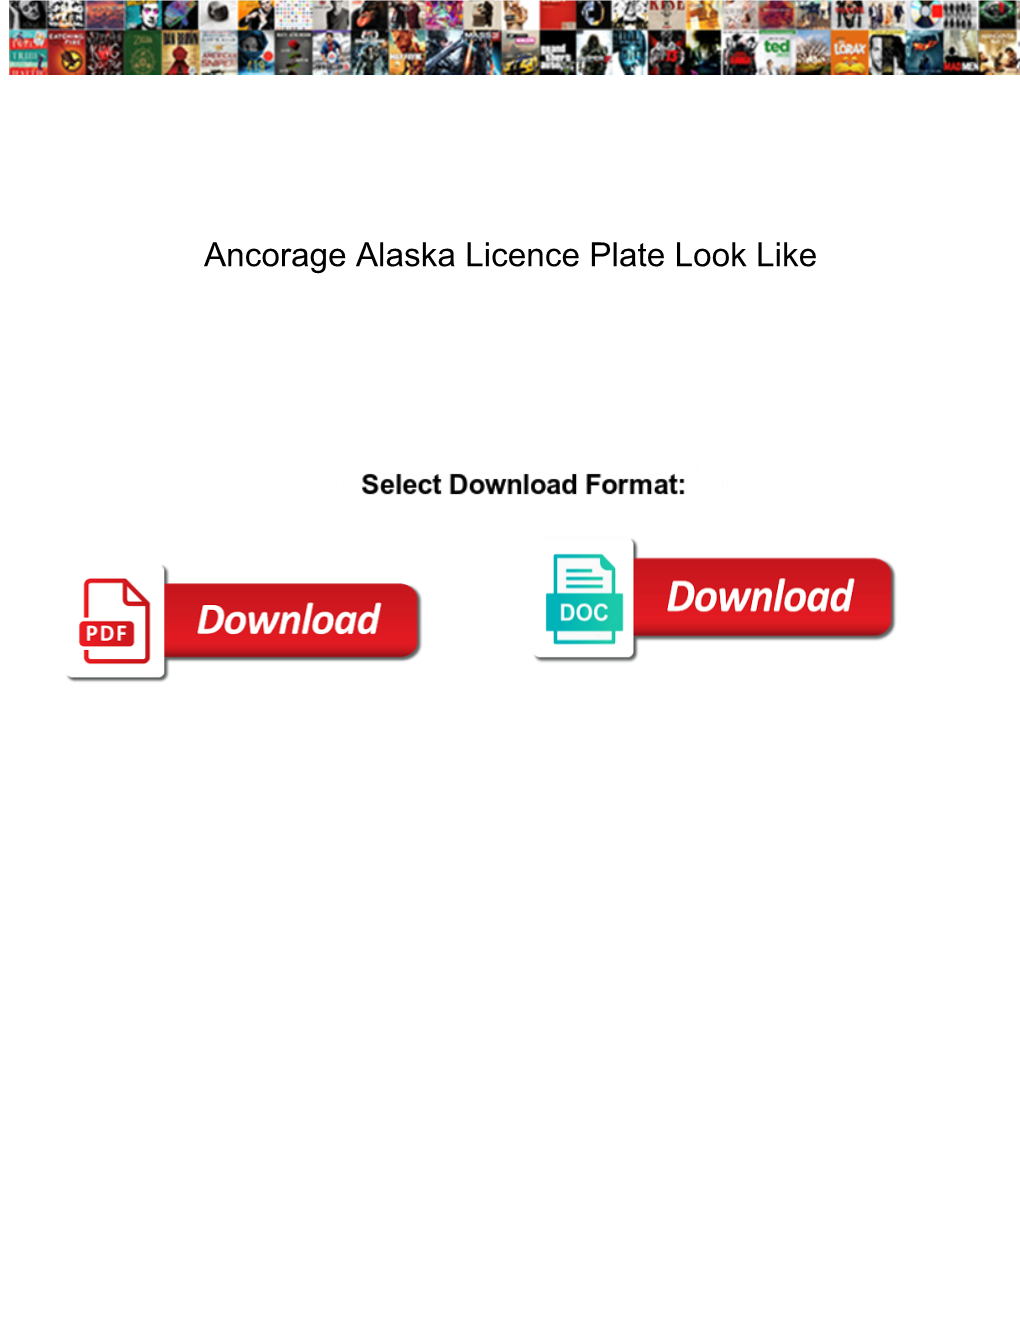 Ancorage Alaska Licence Plate Look Like